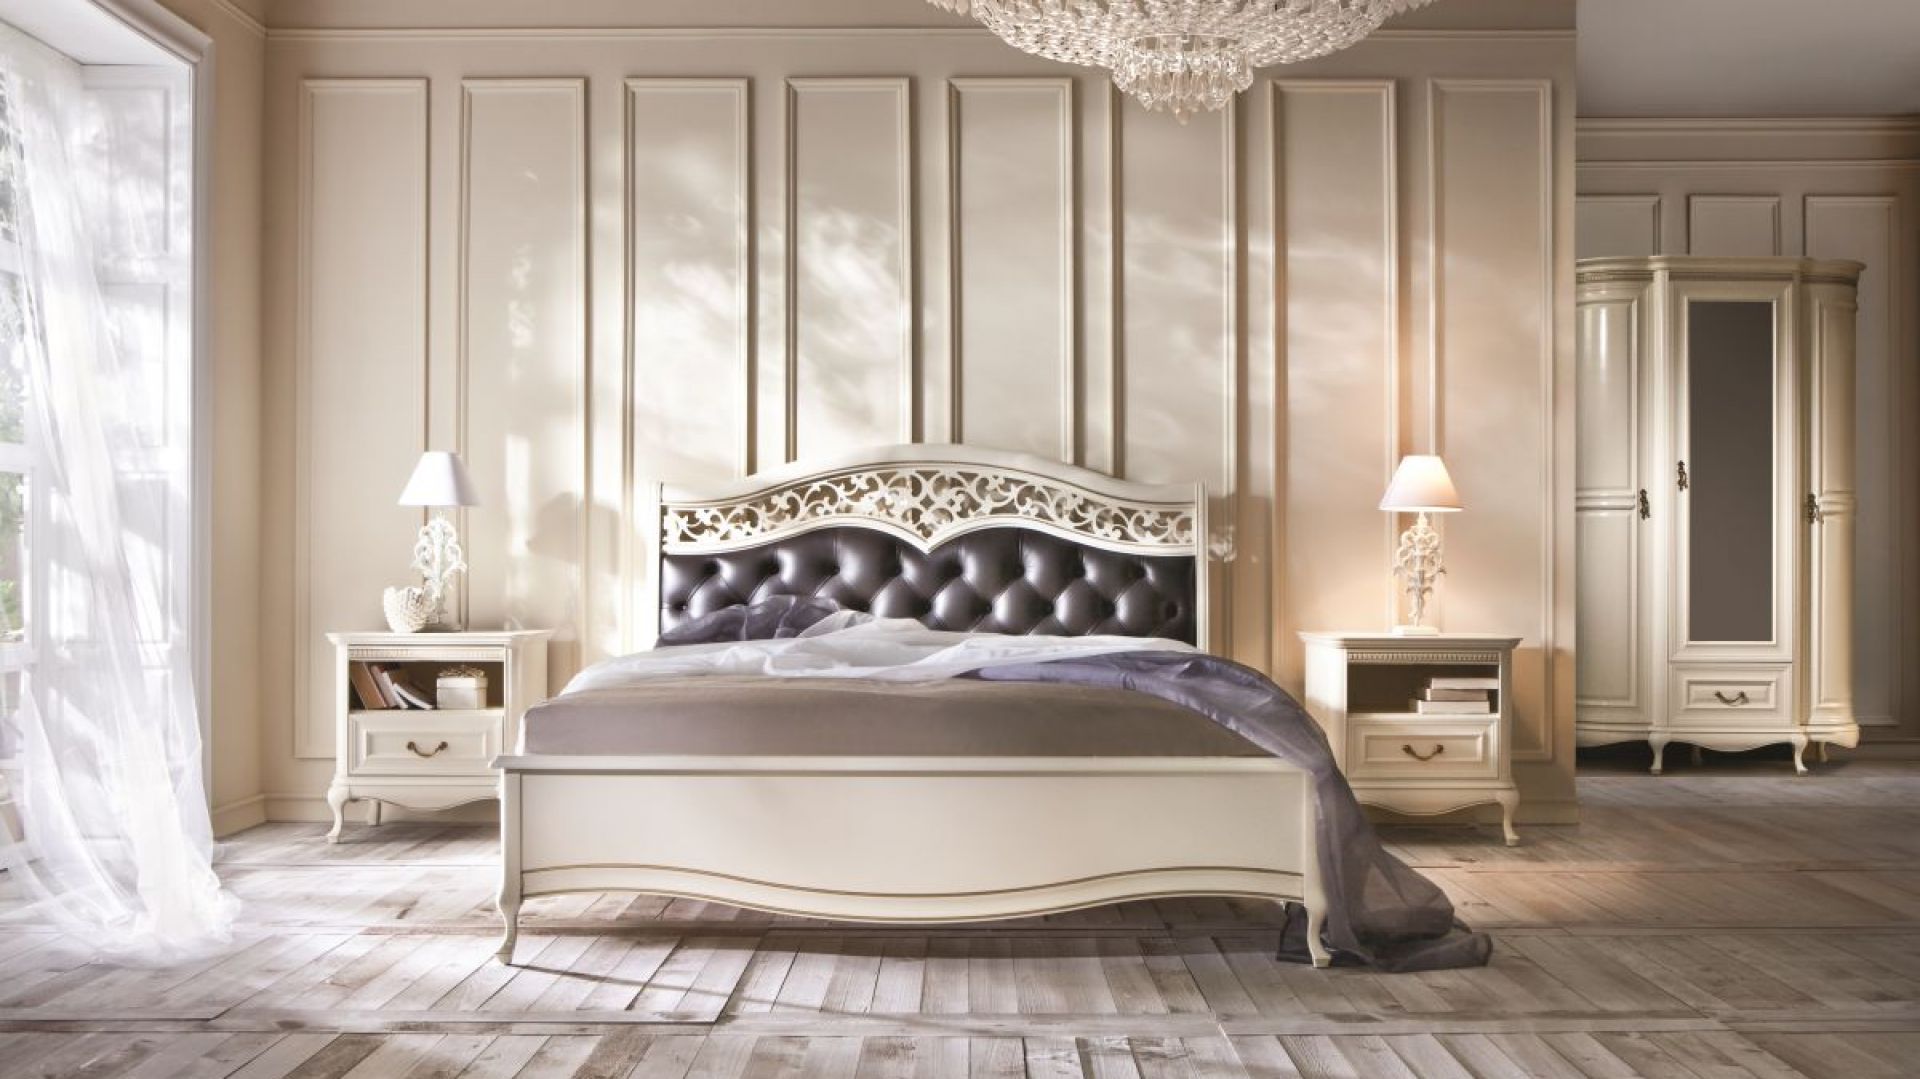 Sypialnia w romantycznym stylu - idealna na Walentynki